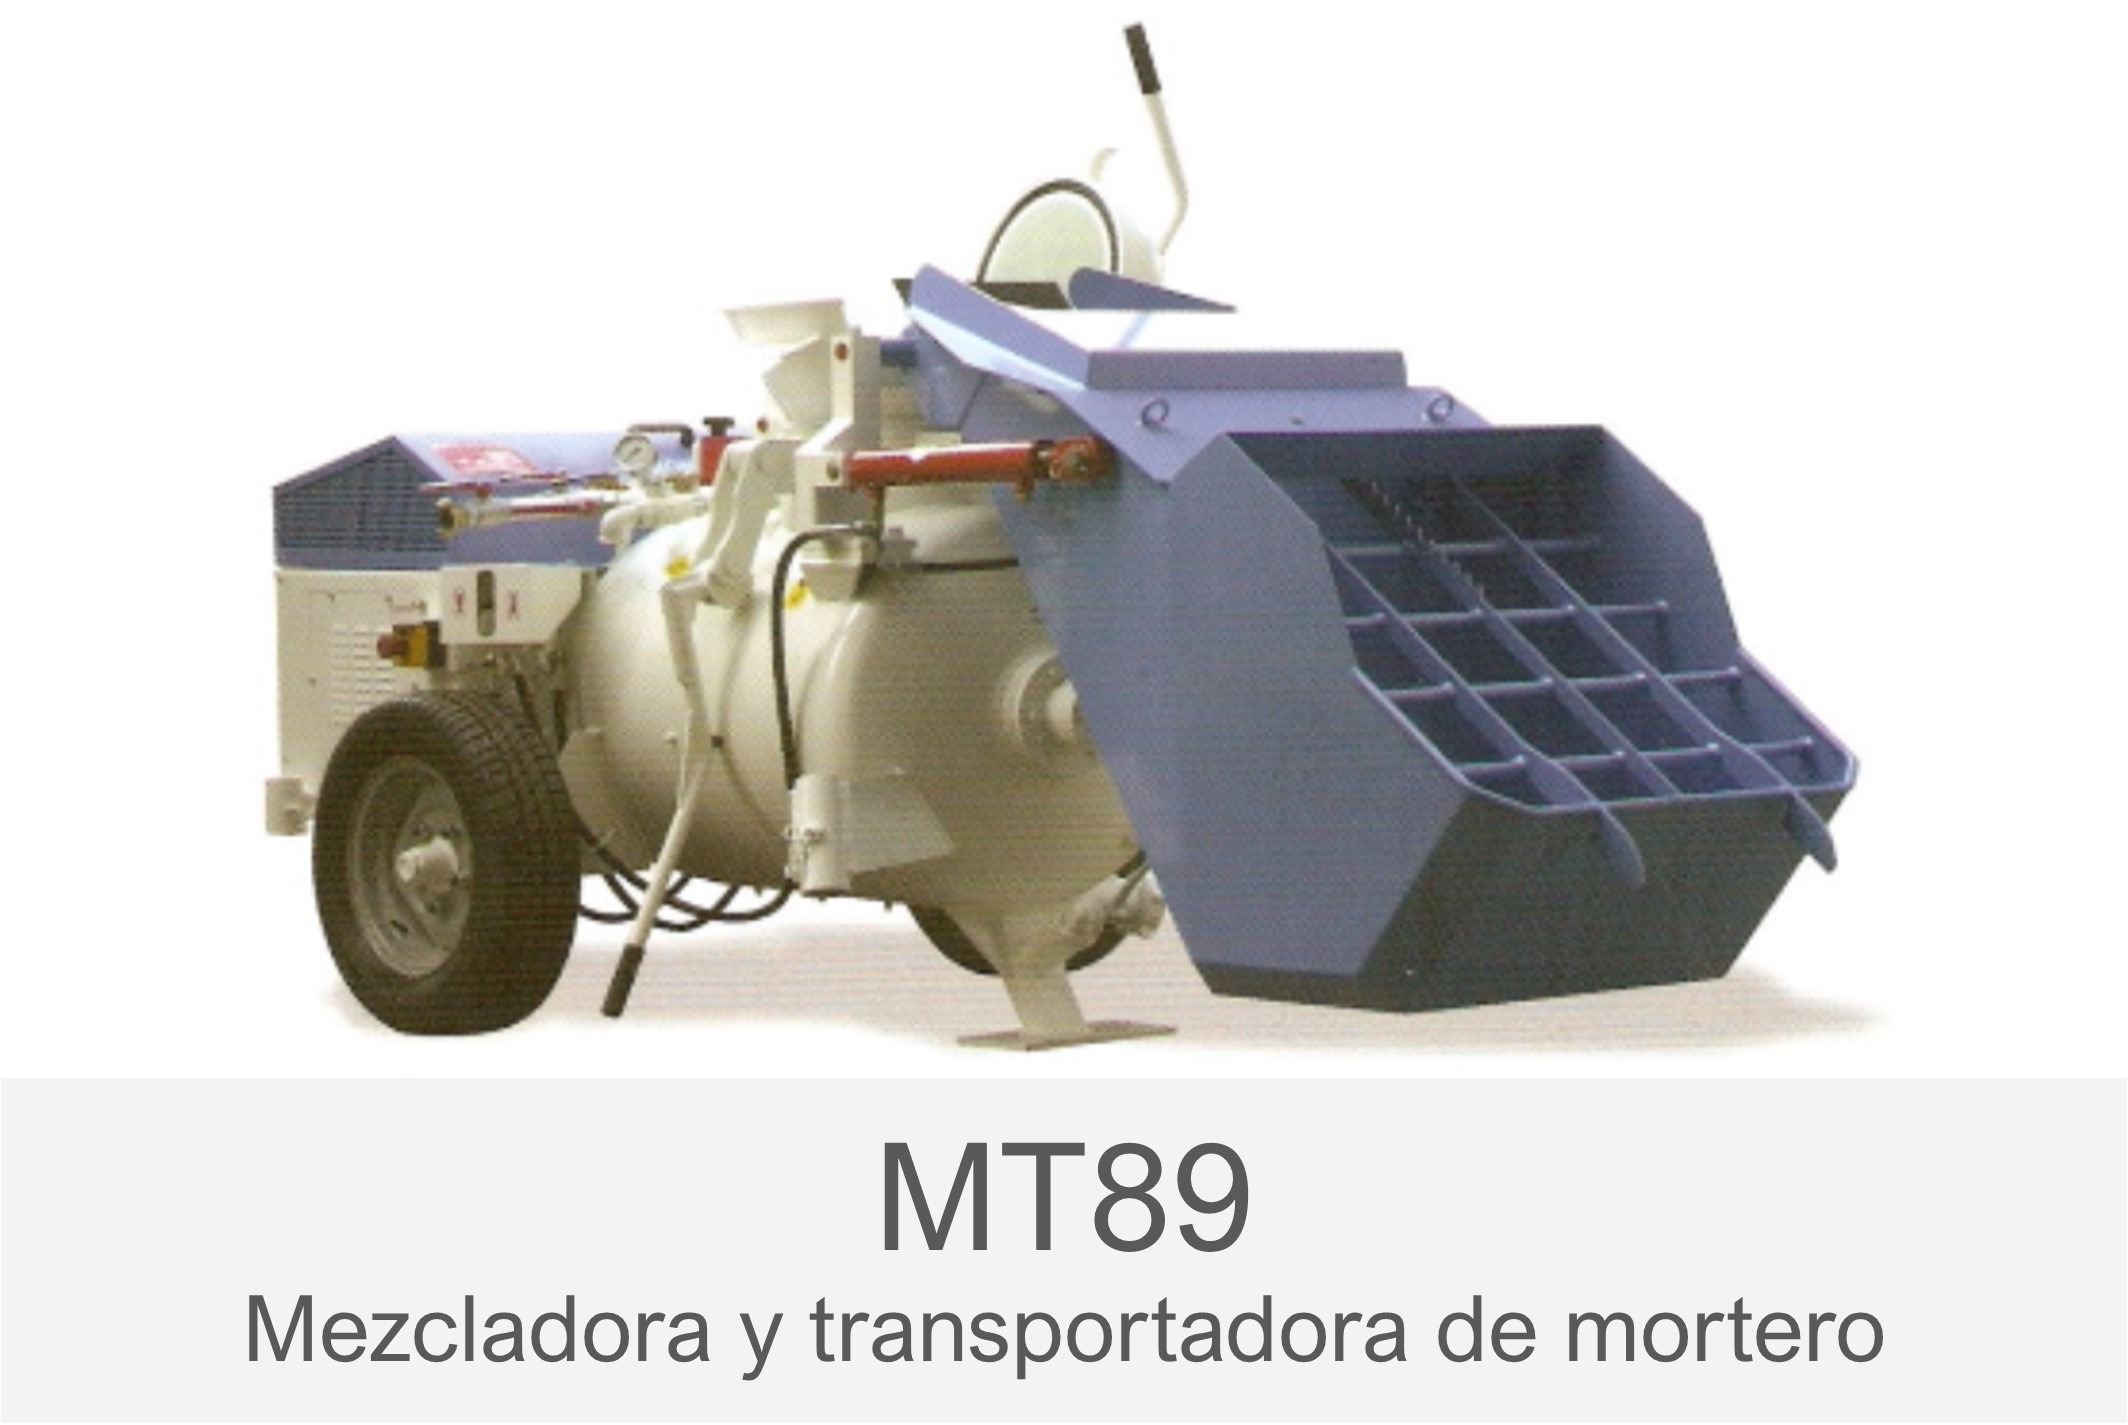 Mezcladora de cemento - Importo Fácil Uruguay. Importaciones Colectivas  para Pymes